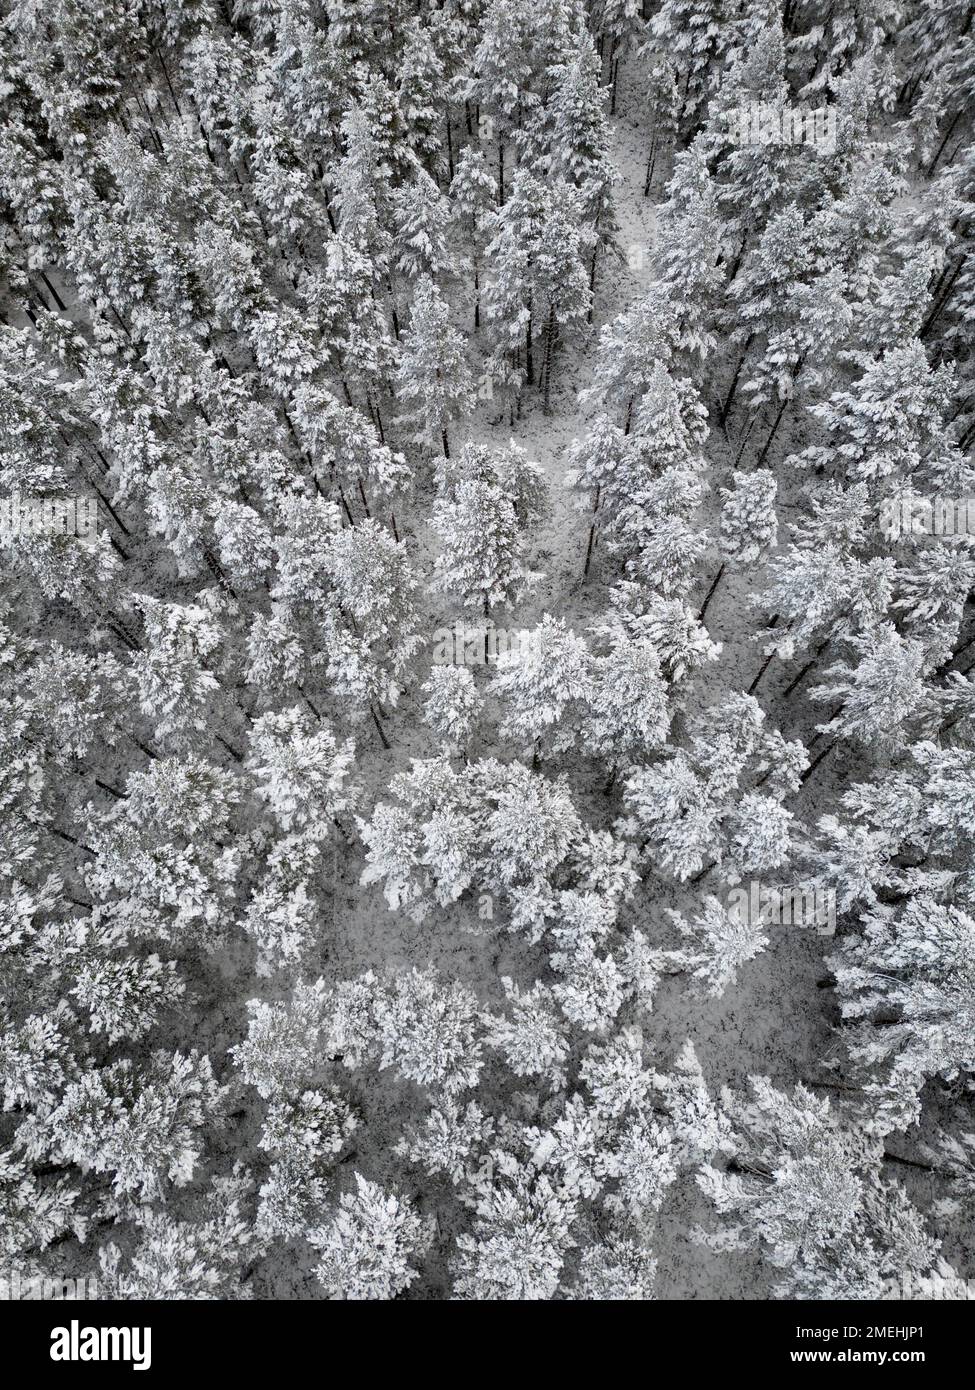 Vue aérienne des arbres enneigés de la forêt de Rothiemurchus dans le parc national de Cairngorms, Scottish Highlands, Écosse, Royaume-Uni Banque D'Images